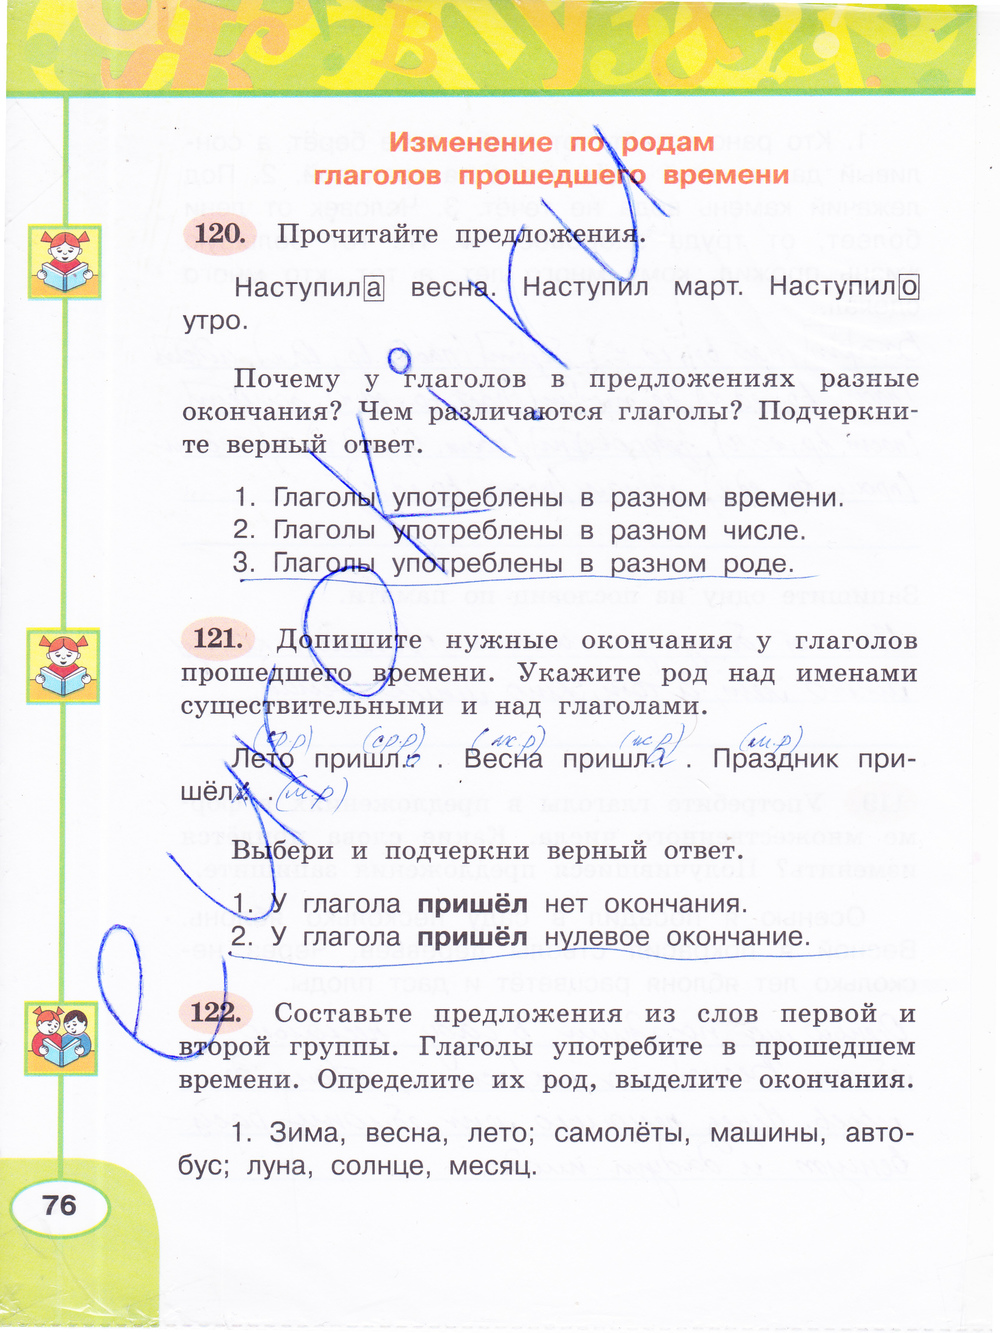 ГДЗ Русский Климанова 3 класс Рабочая тетрадь Номер стр. 76